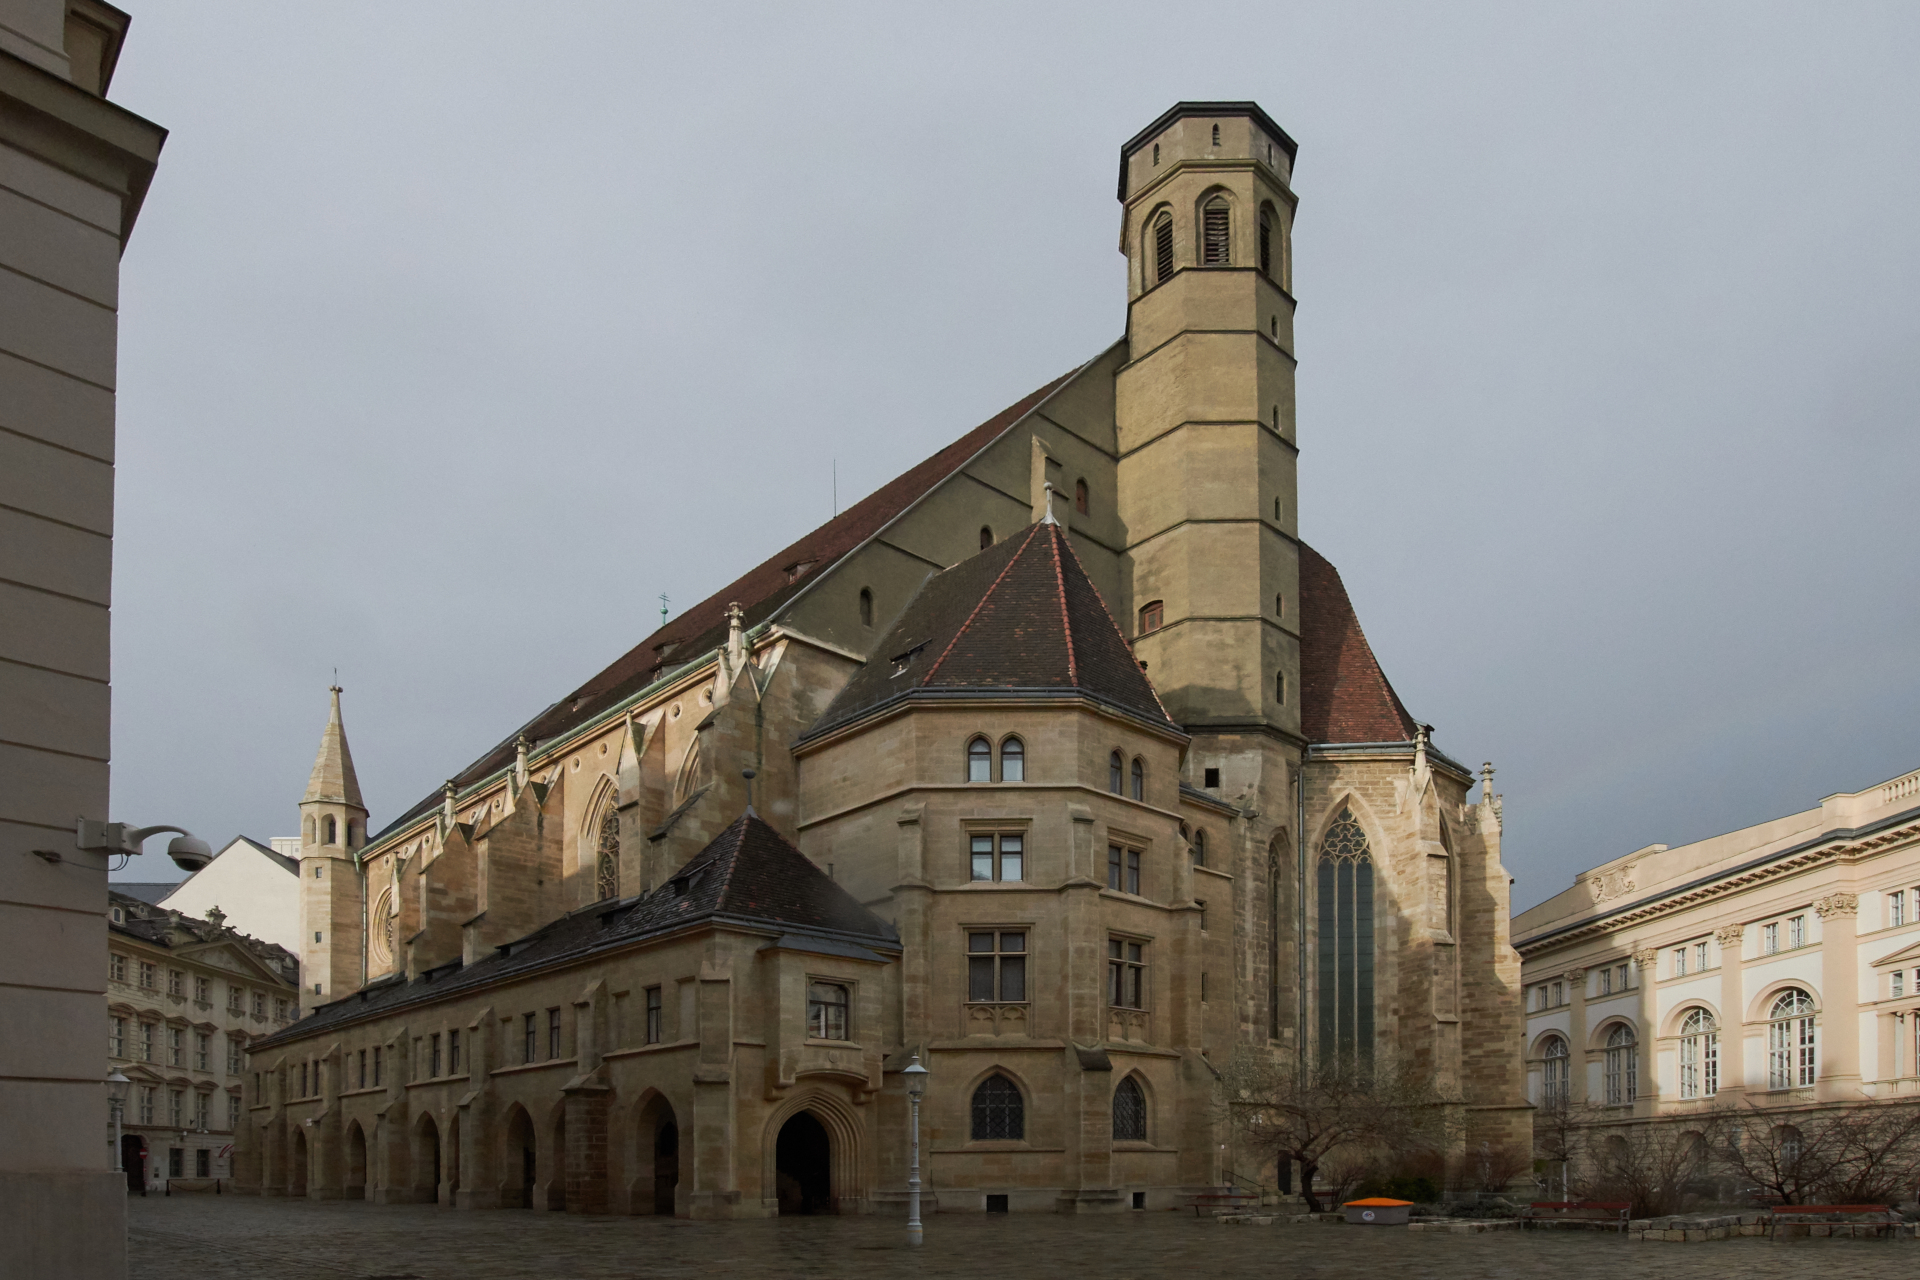 Minoritenkirche Wien